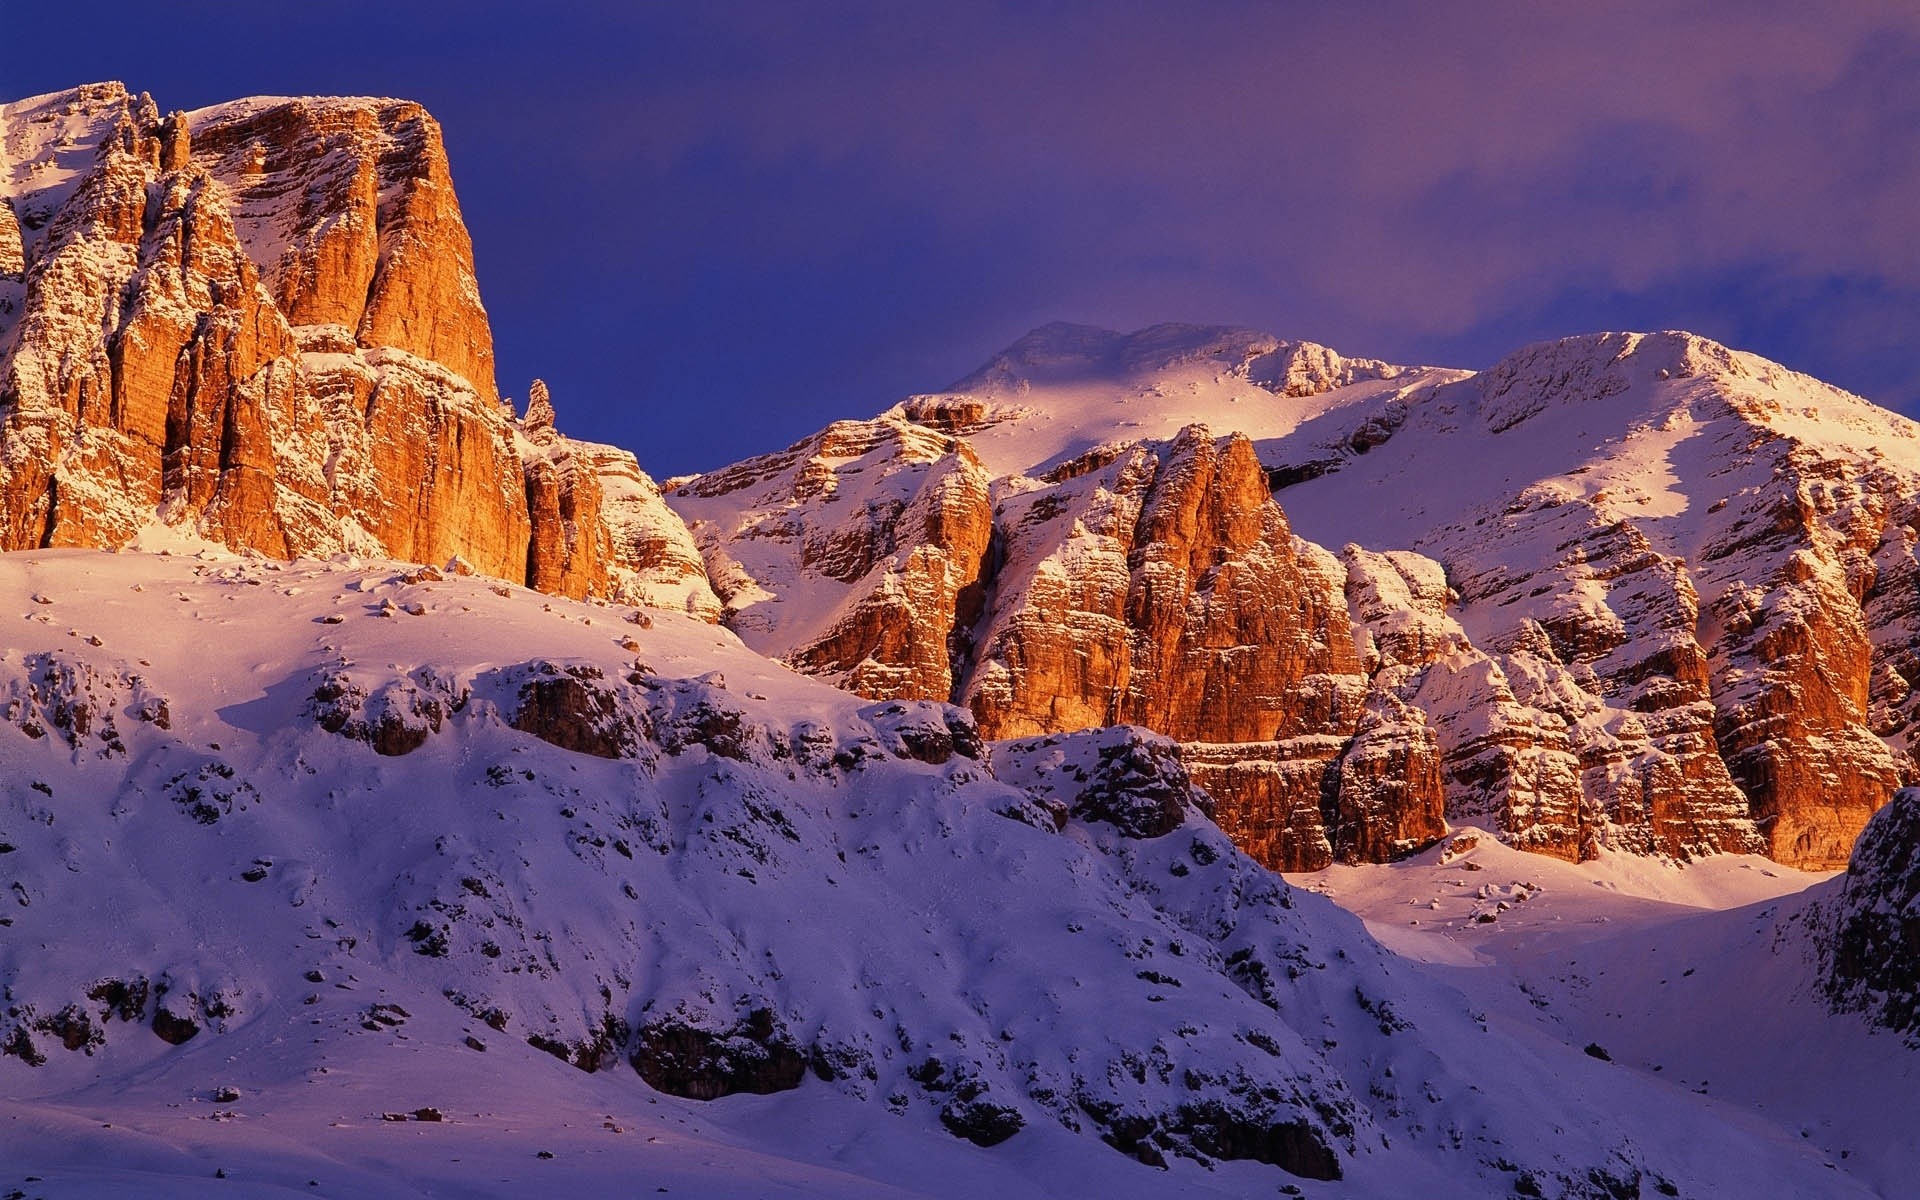 италия снег горы путешествия живописный пиннакл пейзаж зима на открытом воздухе небо закат лед рок рассвет природа